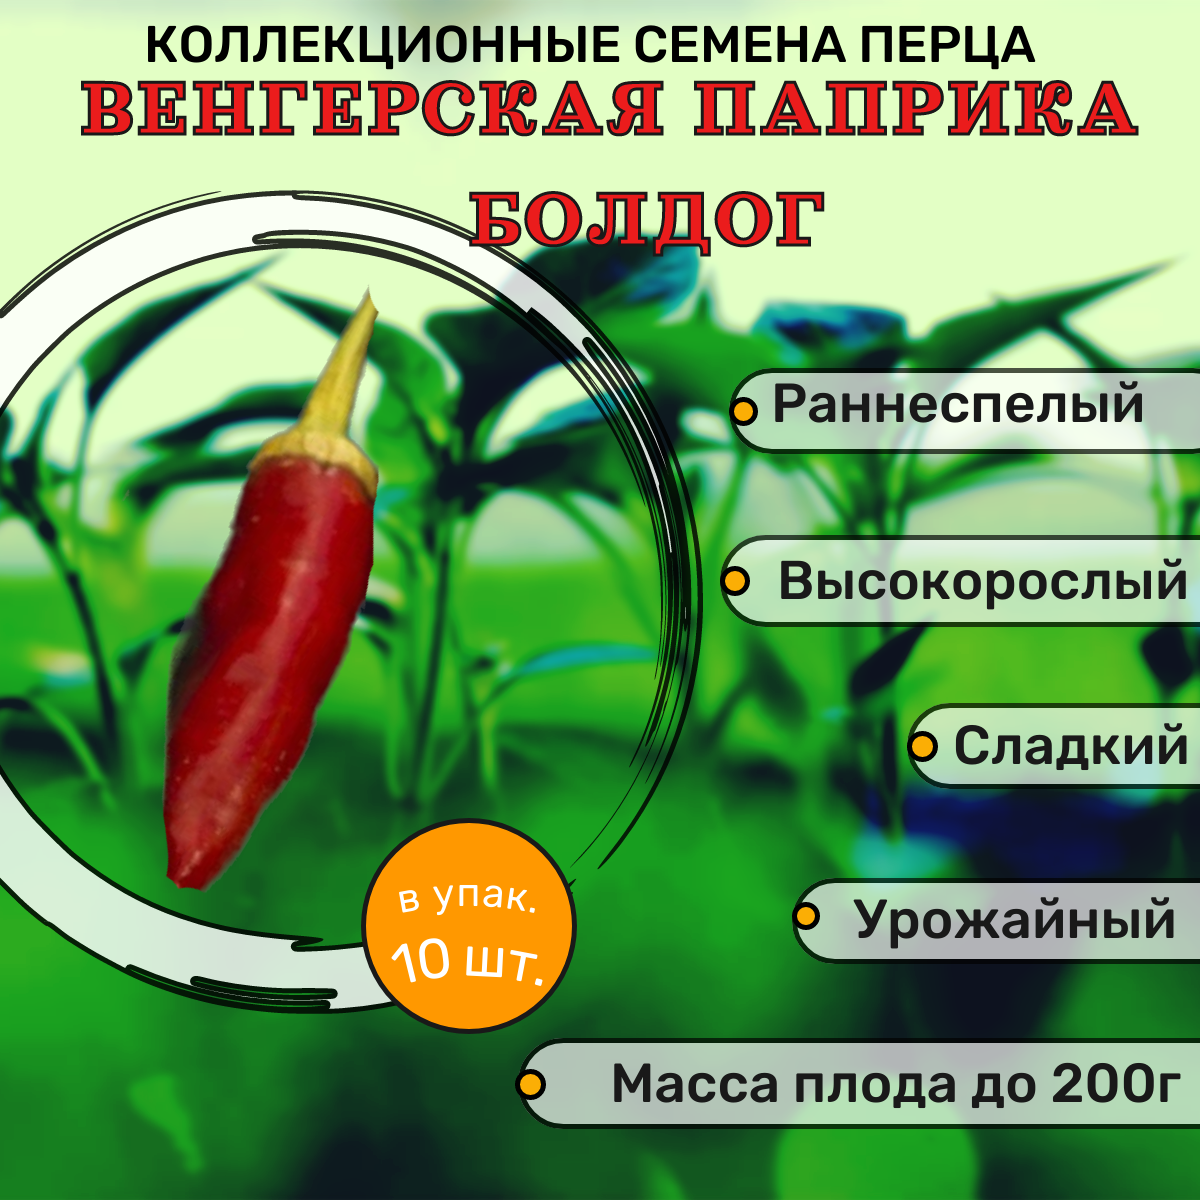 Коллекционные семена перца сладкого Венгерская Паприка Болдог